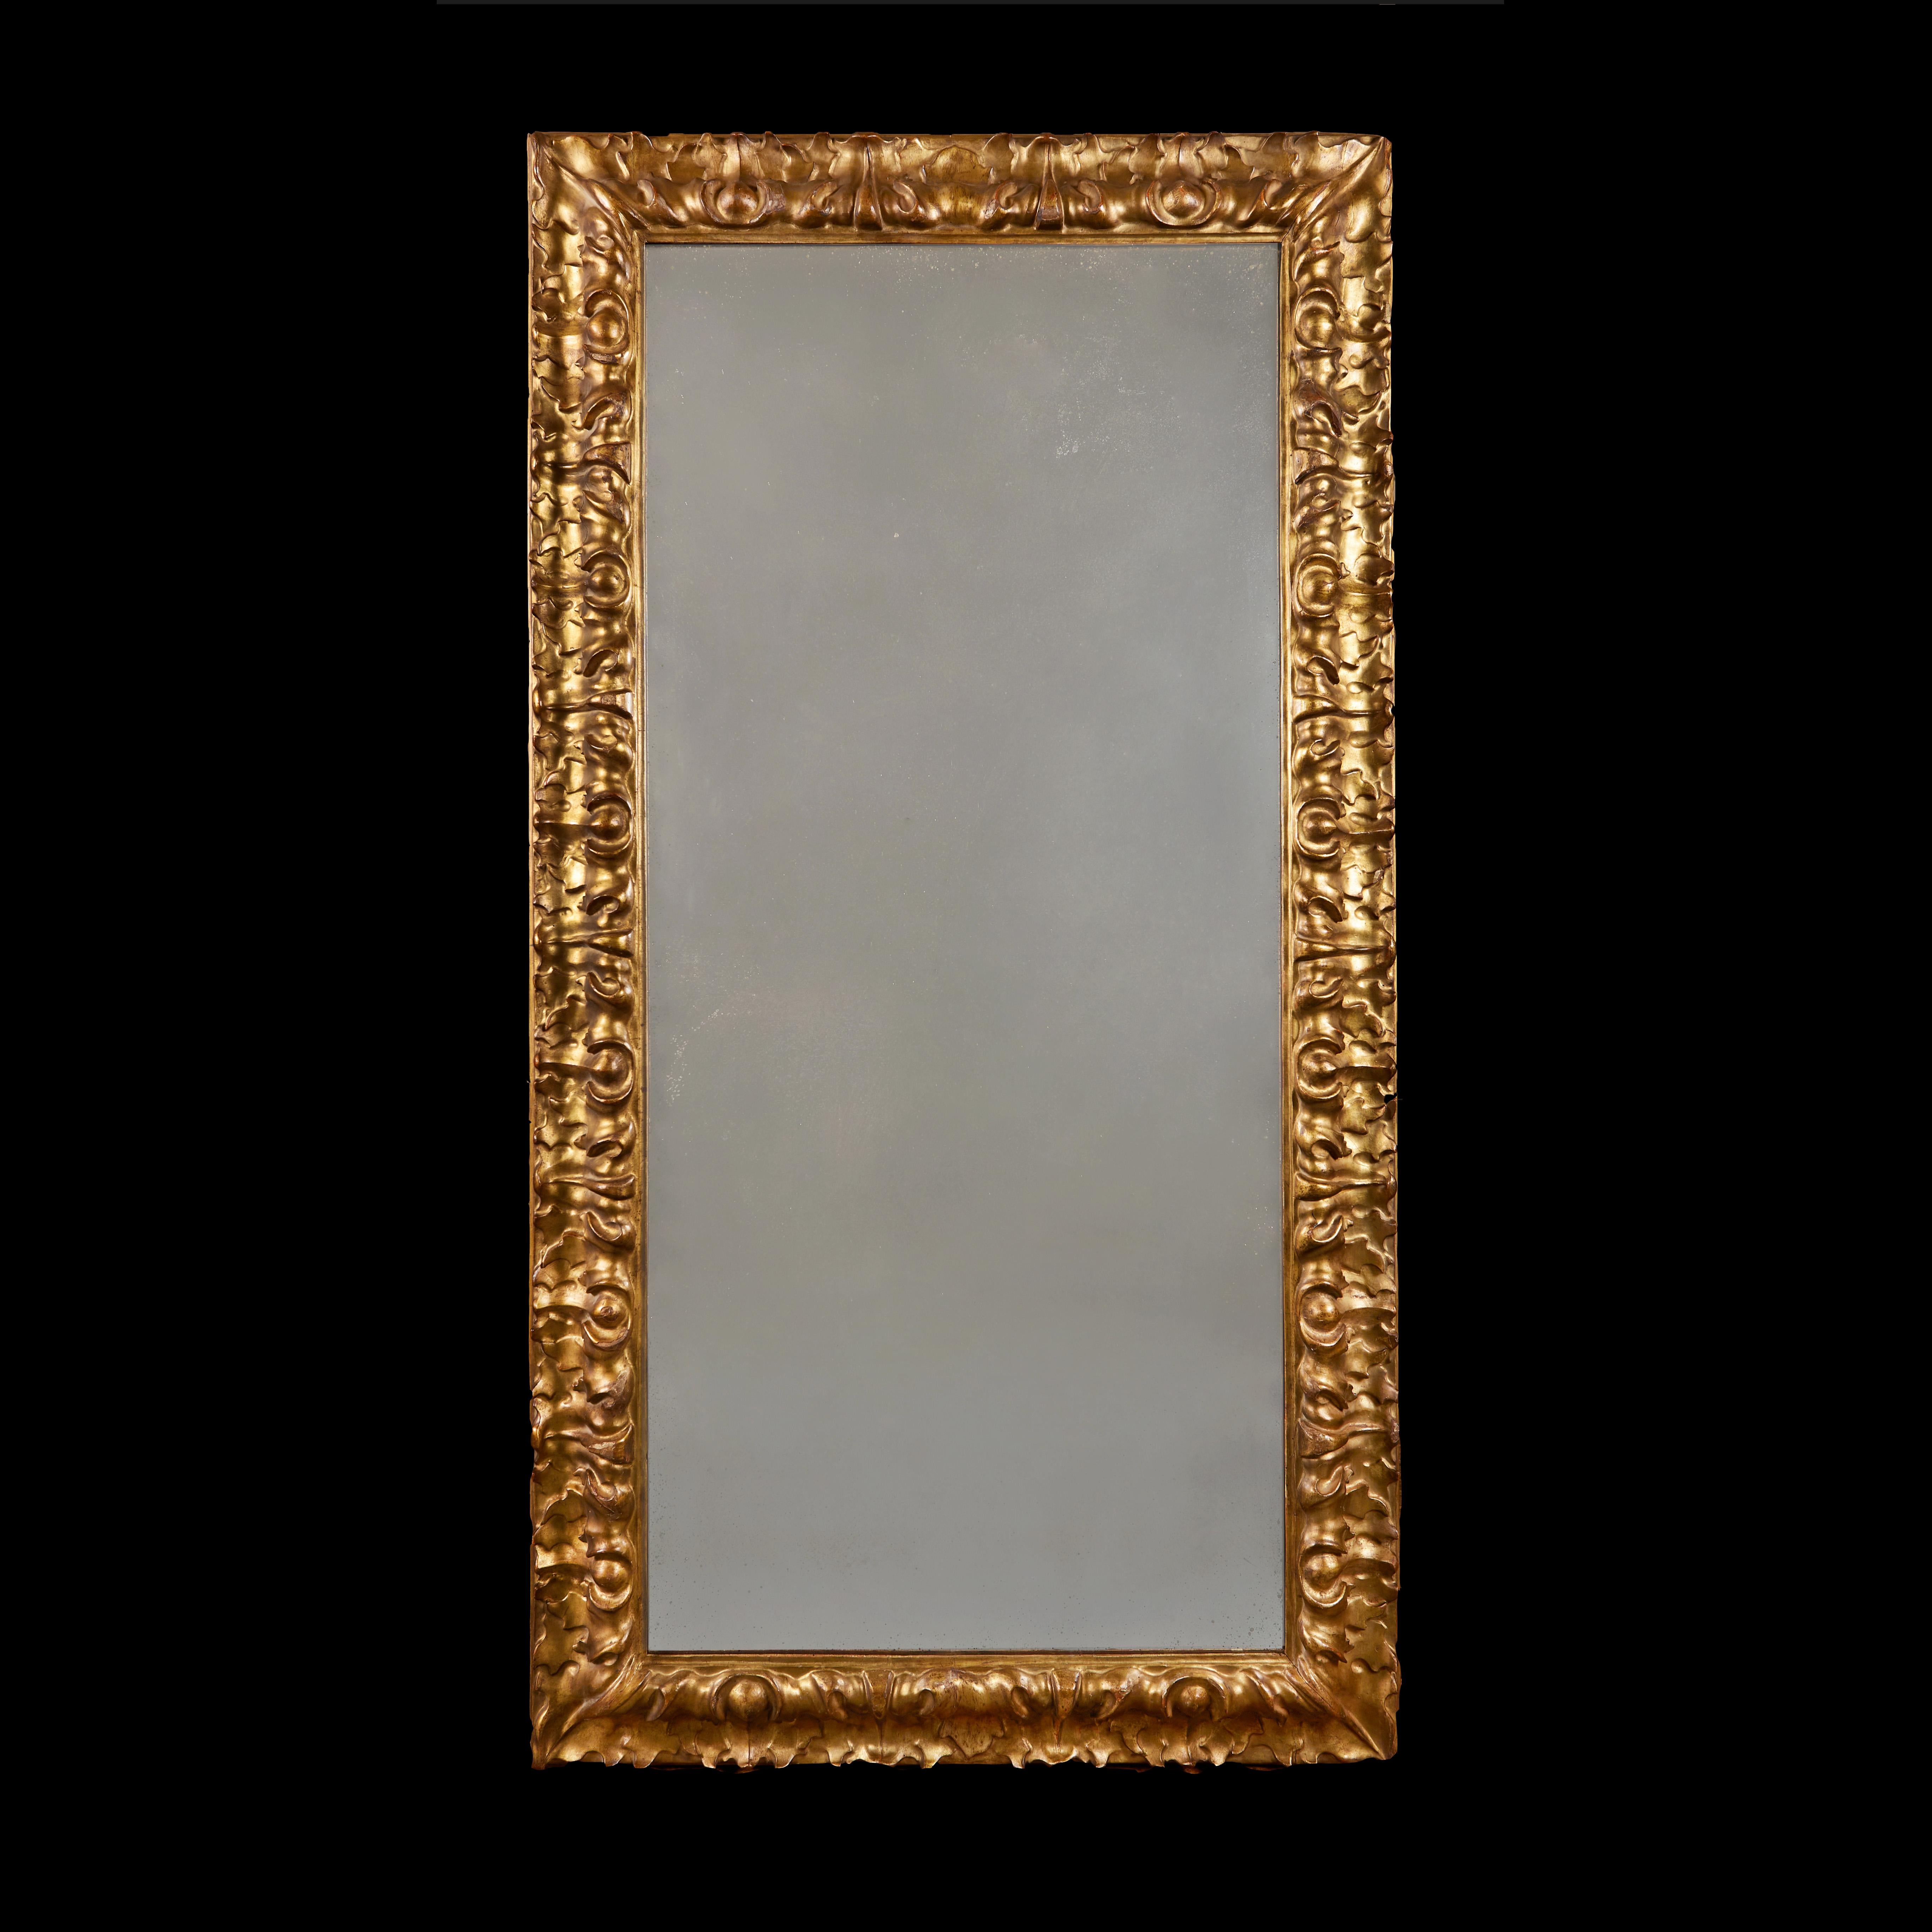 Italie, Florence, vers 1780.

Miroir en bois doré de la fin du XVIIIe siècle, avec une large bordure de motifs feuillus répétitifs profondément sculptés, et une plaque de miroir au mercure.

Hauteur 170,00 cm.
Largeur 91,00 cm.
Profondeur 9,00 cm.